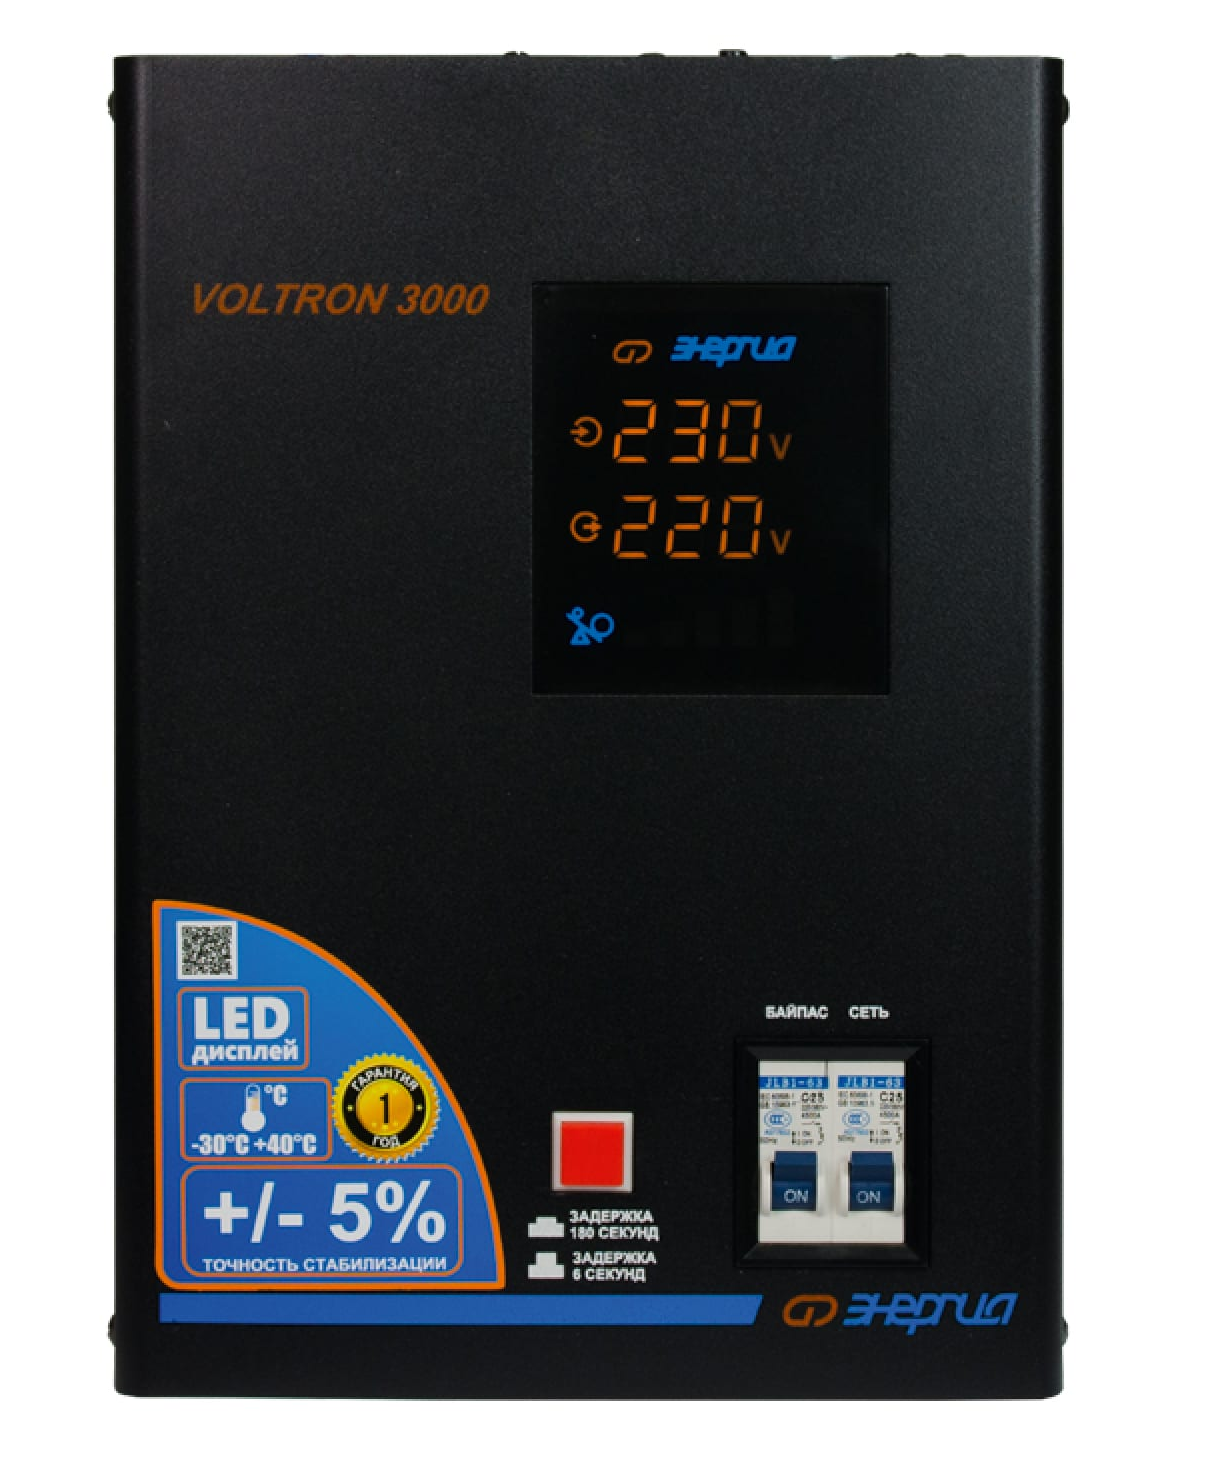 

Стабилизатор напряжения Энергия Voltron 3000 (Е0101-0157)